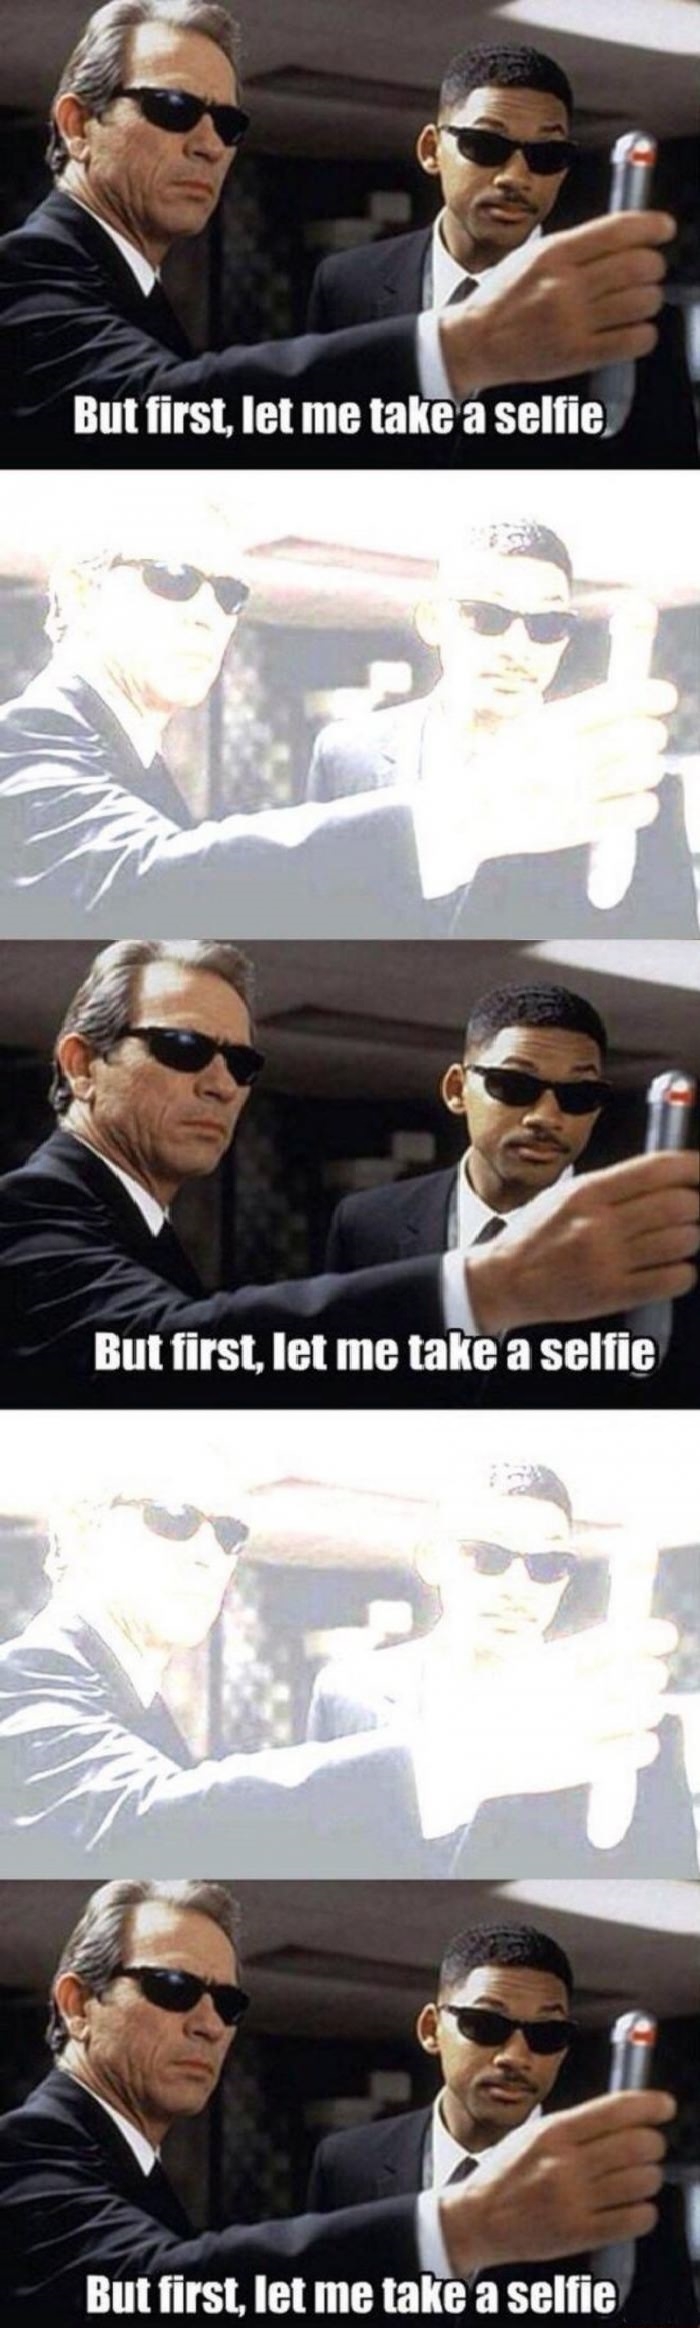 Lemme take a selfie